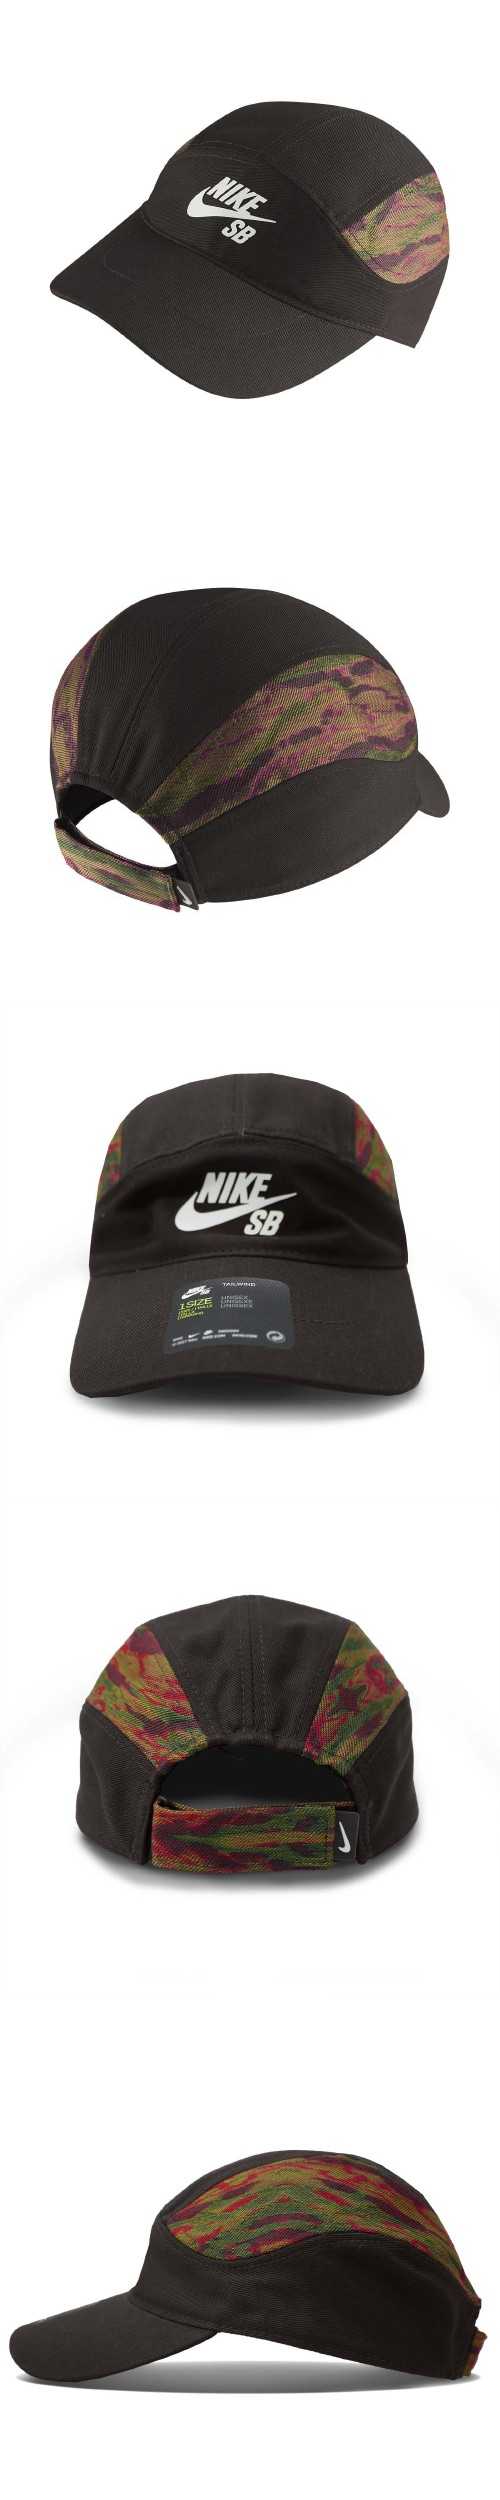 Nike 帽子 SB Tailwind Cap 男女款